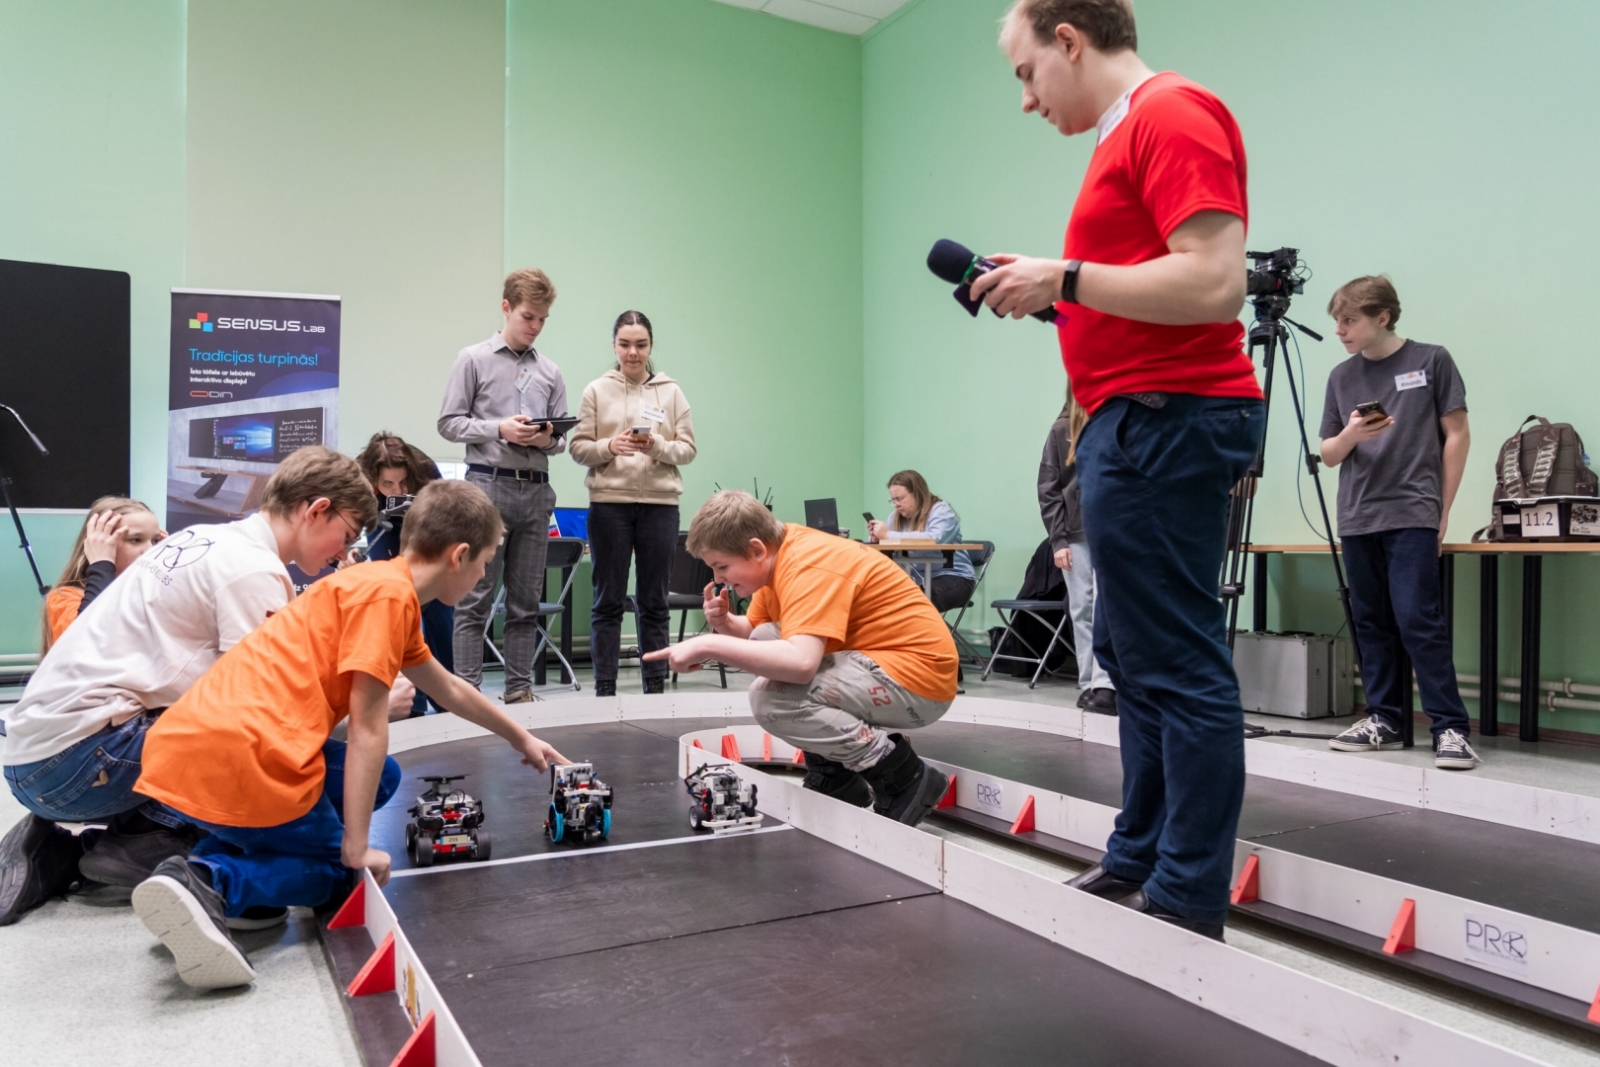 Aizvadīts 16. Latvijas robotikas čempionāta 6. Preiļu robotikas čempionāta posms